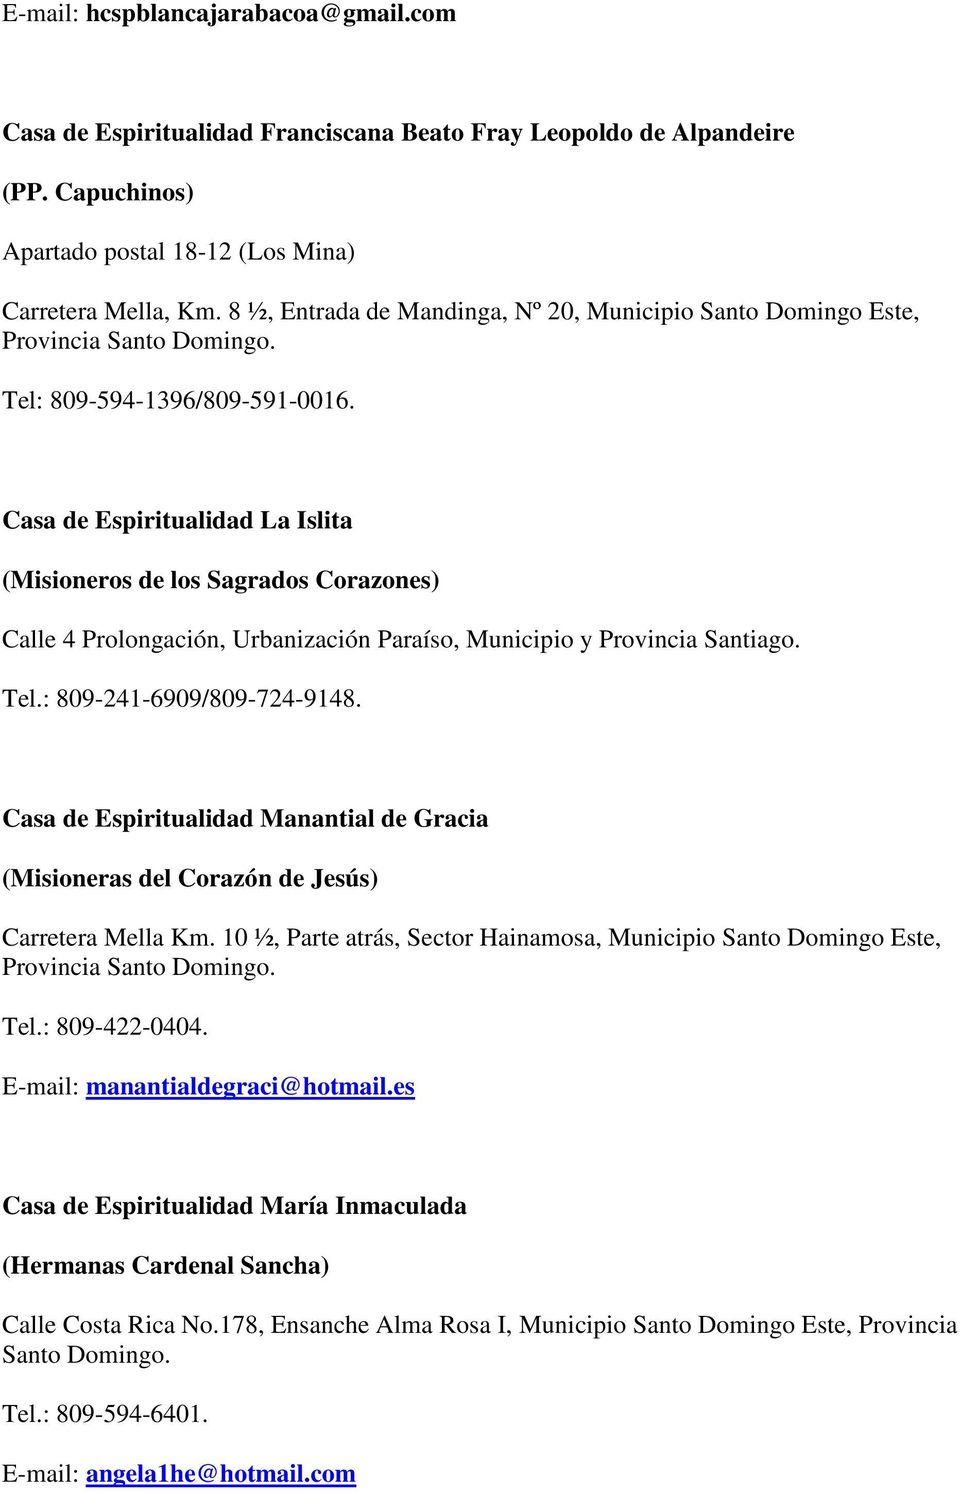 Casa de Espiritualidad La Islita (Misioneros de los Sagrados Corazones) Calle 4 Prolongación, Urbanización Paraíso, Municipio y Provincia Santiago. Tel.: 809-241-6909/809-724-9148.